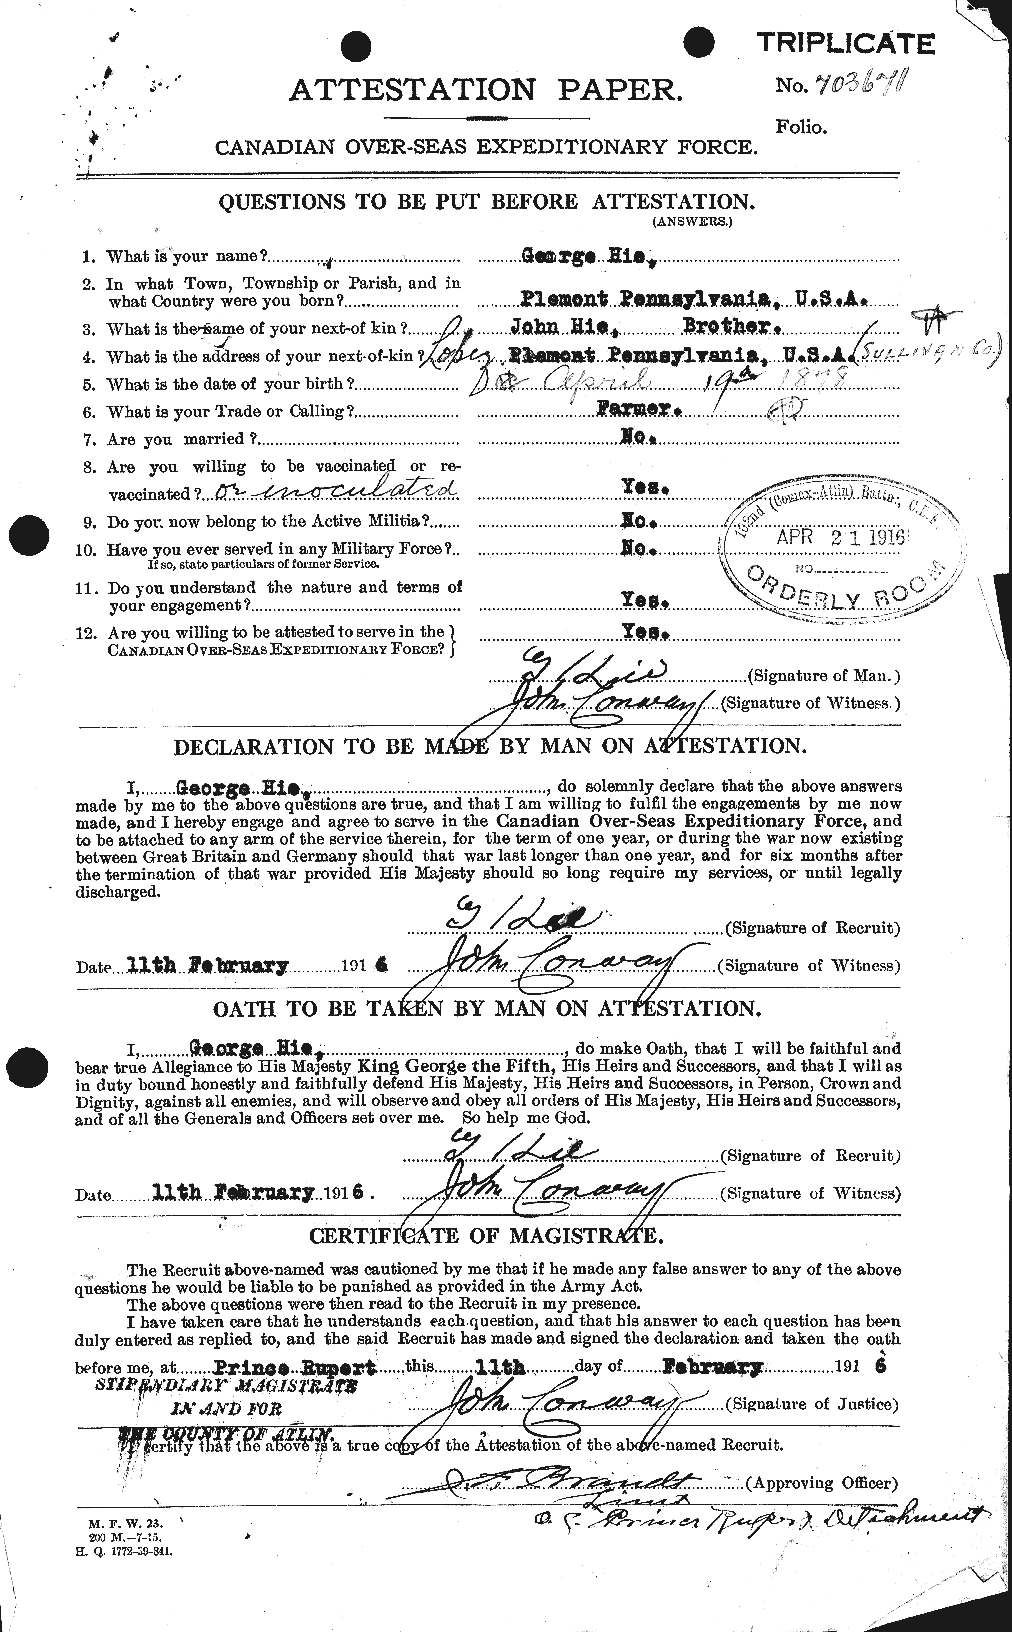 Dossiers du Personnel de la Première Guerre mondiale - CEC 391734a